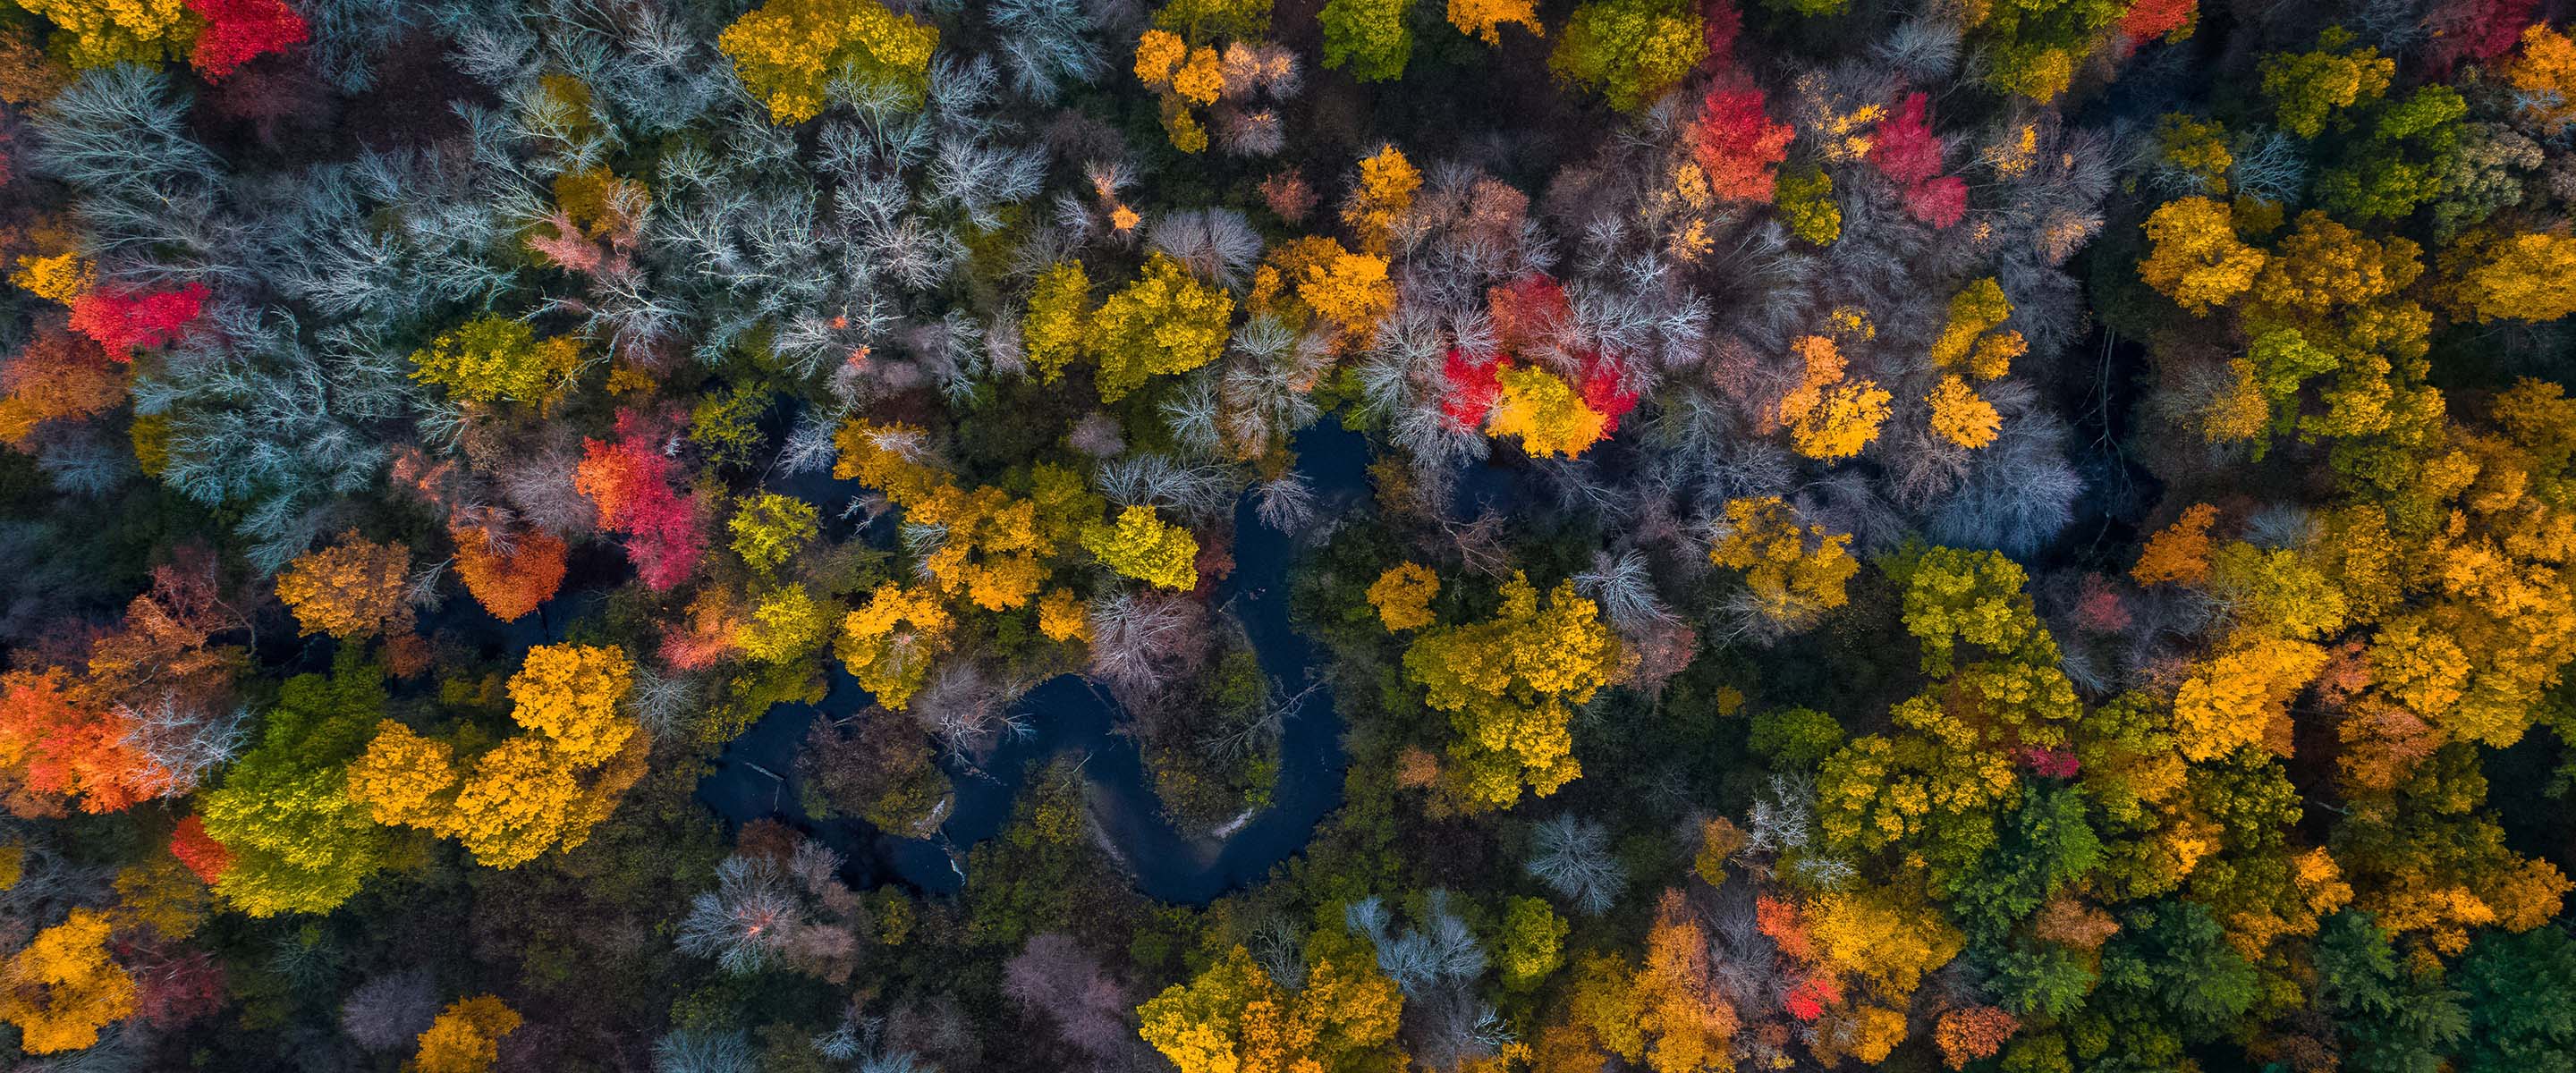 Fall trees in Massachusetts.